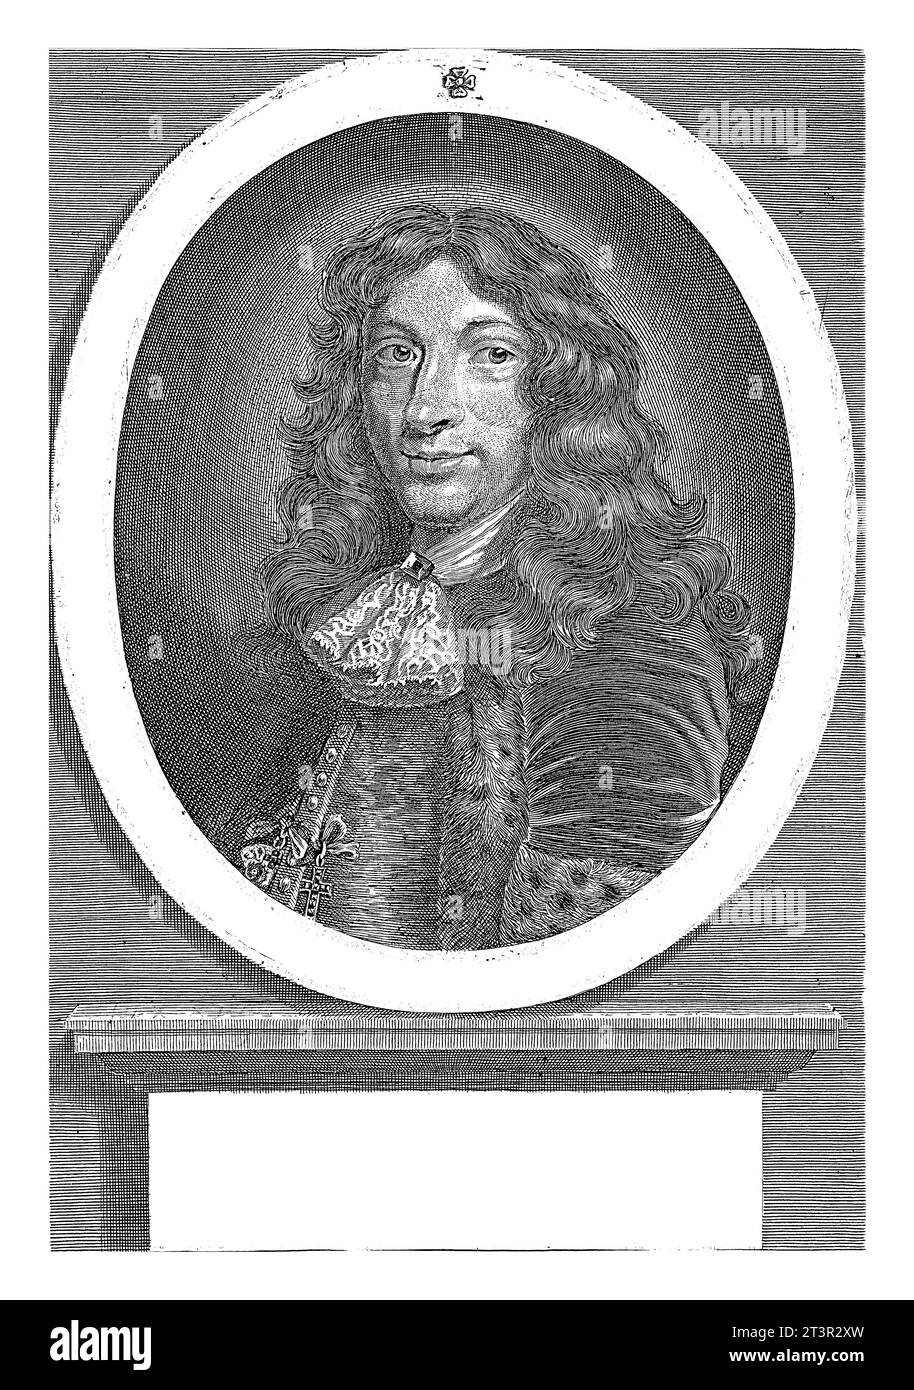 Portrait of Peder Schumacher, Count of Griffenfeld, Coenraet Waumans, 1675 Portrait of Peder Schumacher, Count of Griffenfeld, at the age of 38. Stock Photo